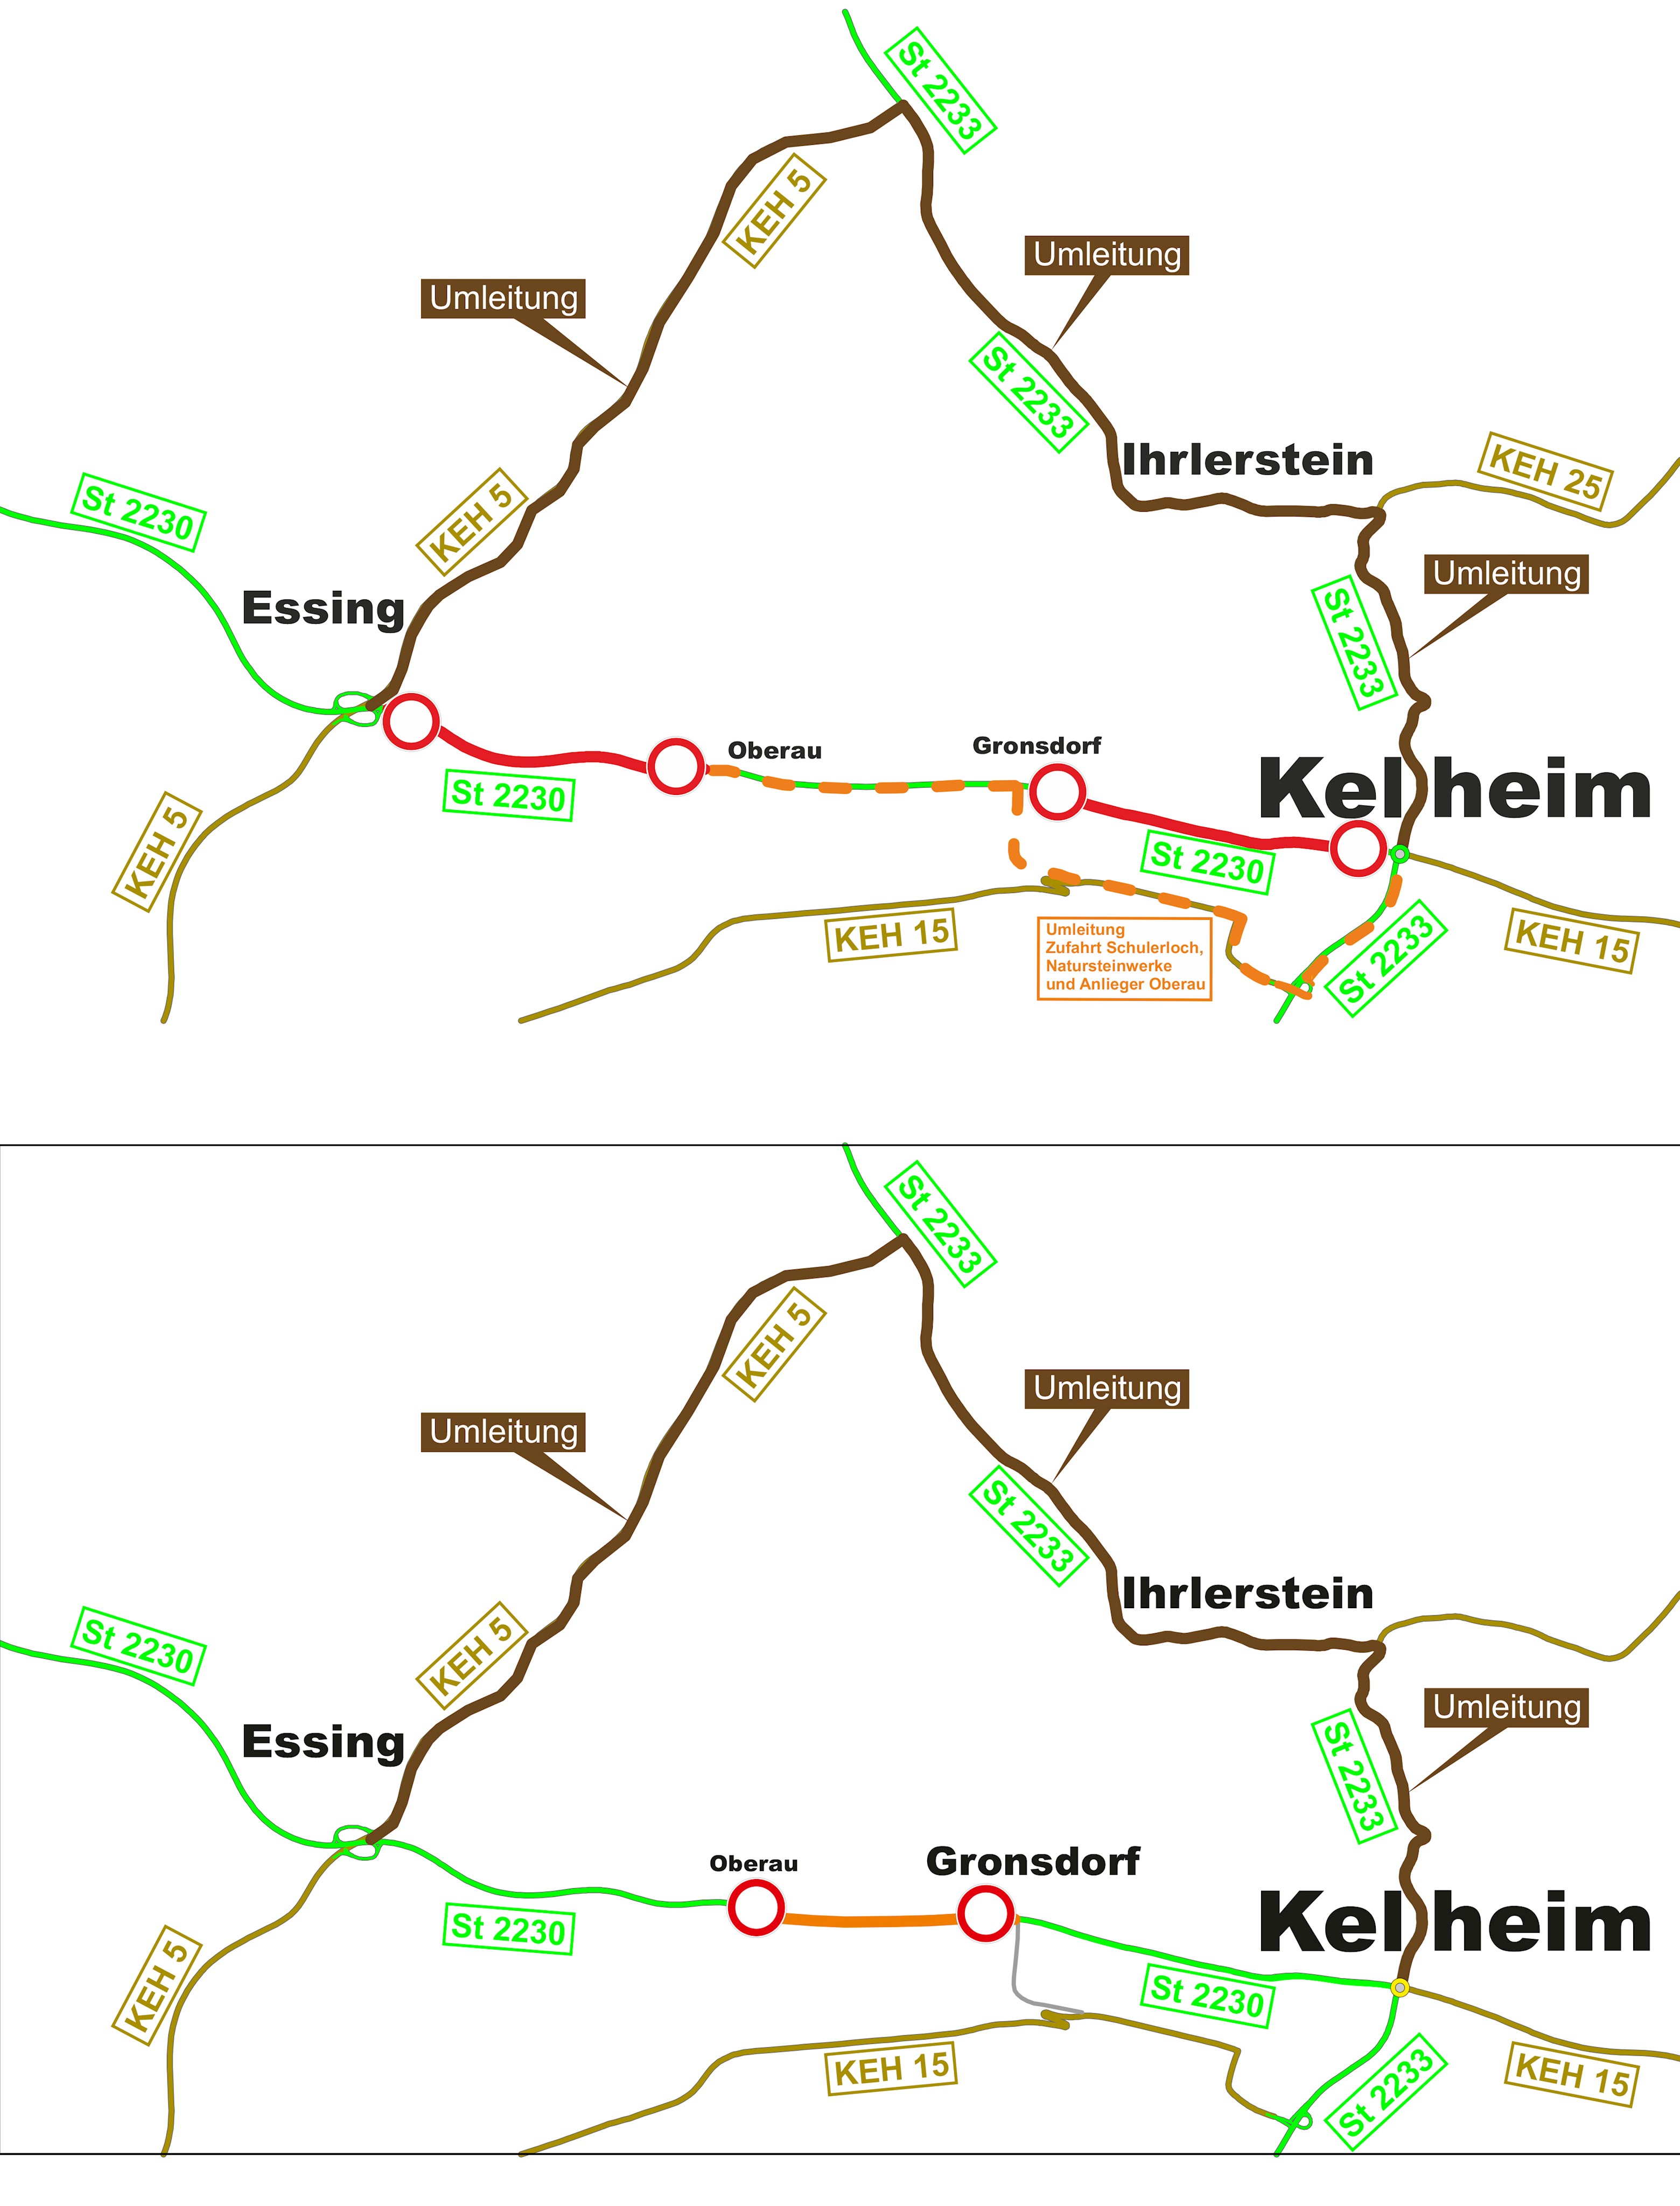 Beginn Sanierung St 2230 westlich von Kelheim